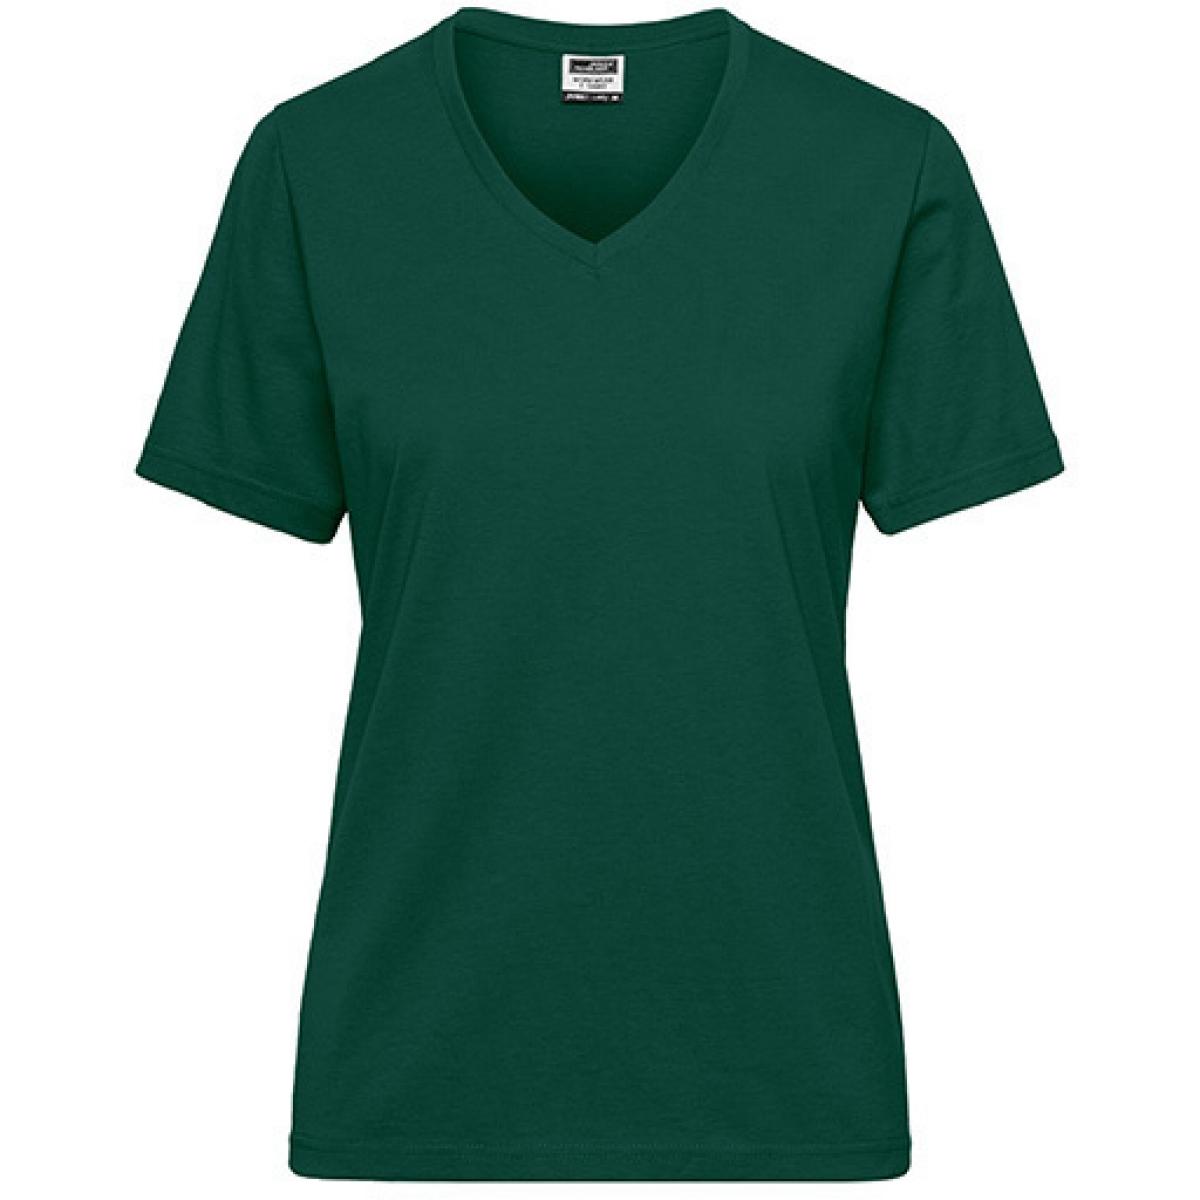 Hersteller: James+Nicholson Herstellernummer: JN1807 Artikelbezeichnung: Ladies‘ BIO Workwear T-Shirt / Damen T-Shirt - Waschbar 60C Farbe: Dark Green